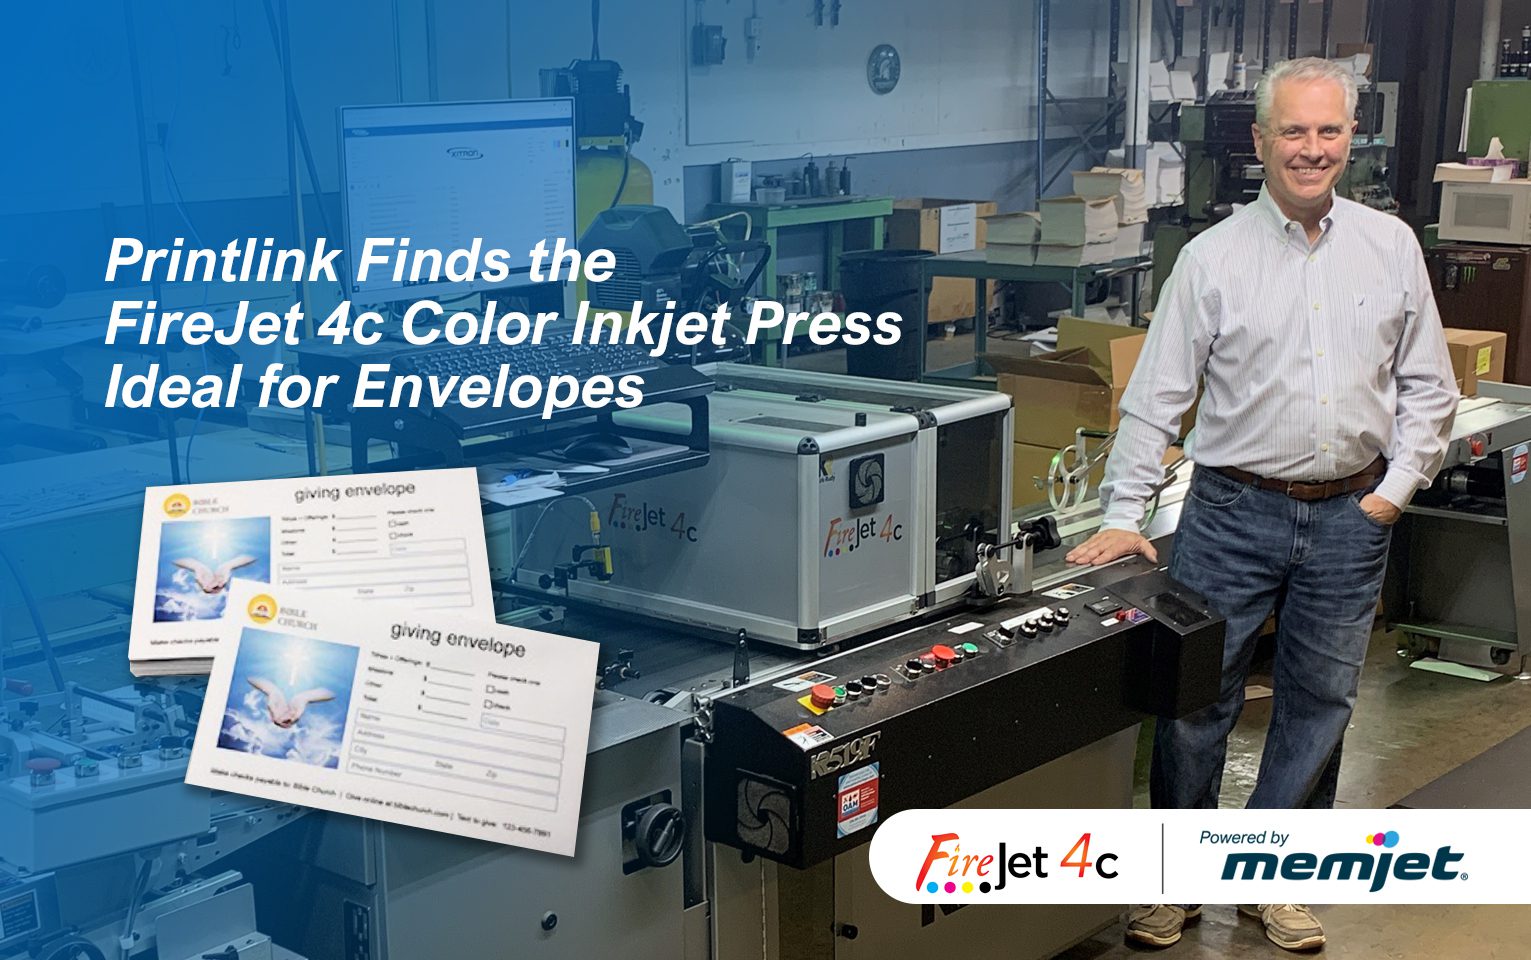 Printlink Finds FireJet 4c Color Inkjet Press Ideal for Envelopes